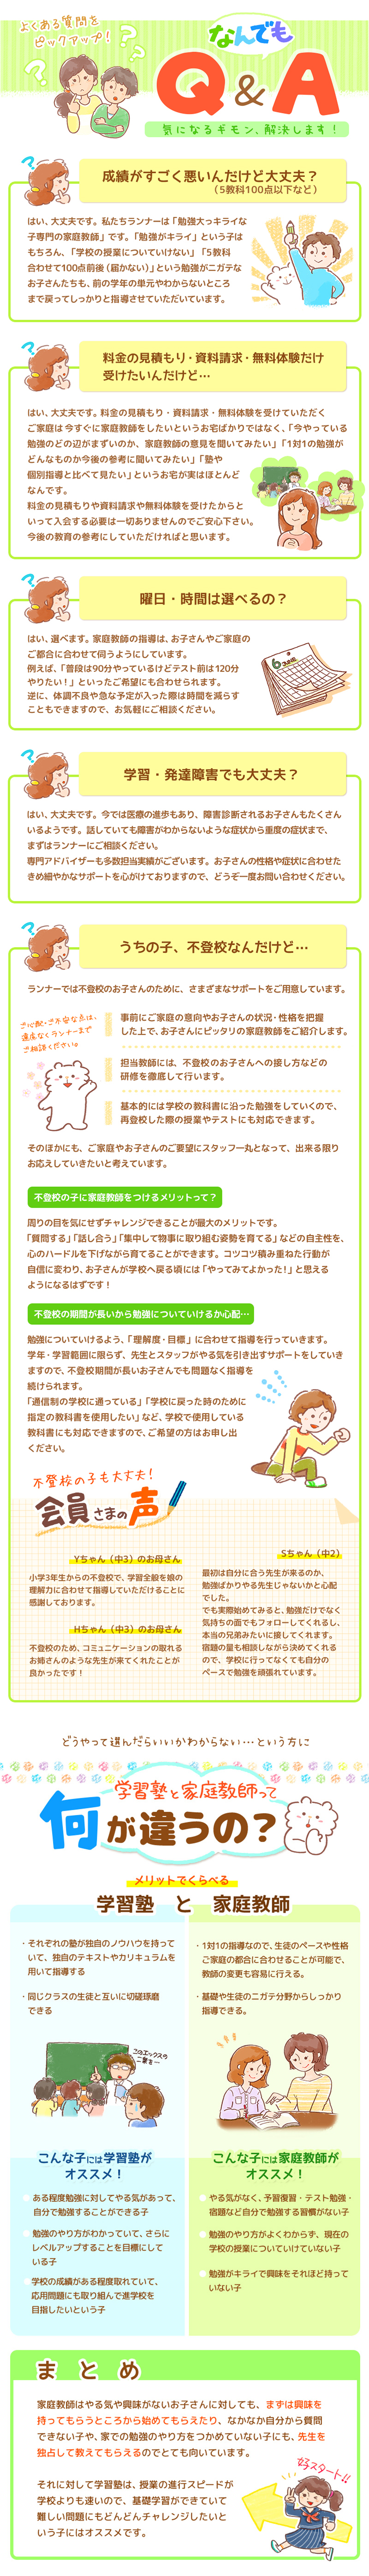 【家庭教師-熊本県-錦町のお客様のページ】【画像が表示されない場合はページ下部に画像と同じ内容をテキストで掲載していますのでそちらをご覧ください。】